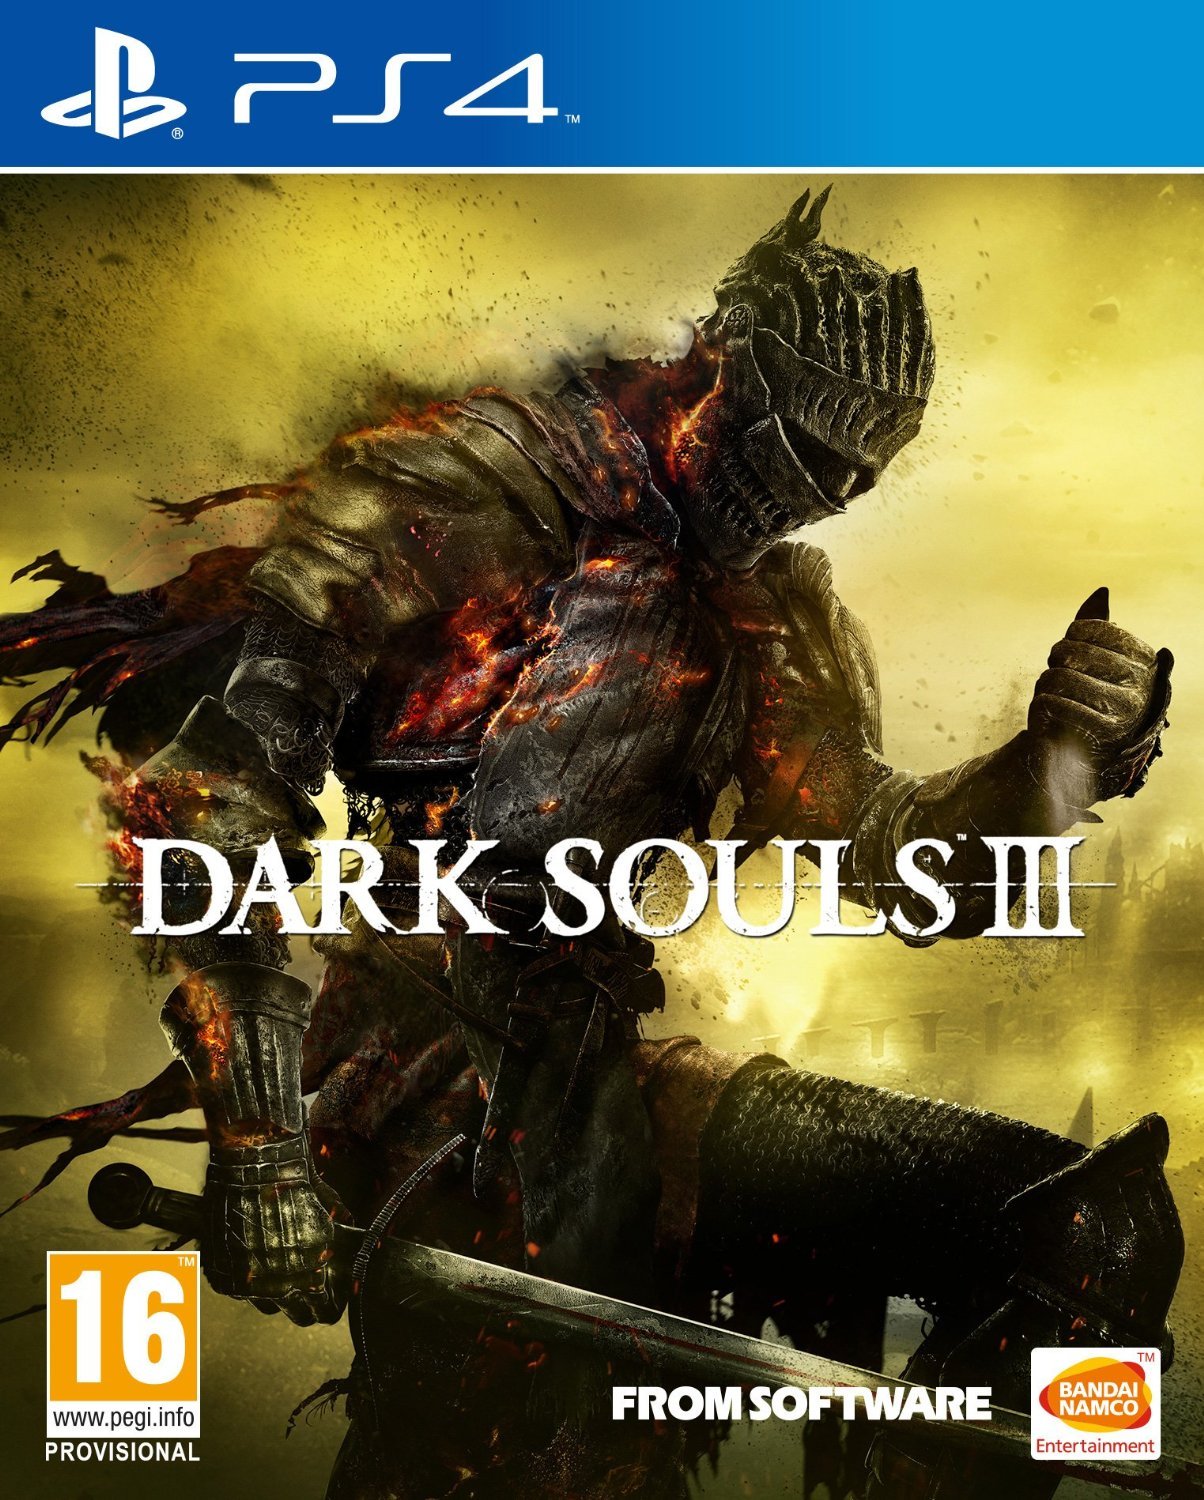 Dark Souls III se lanzará próximamente